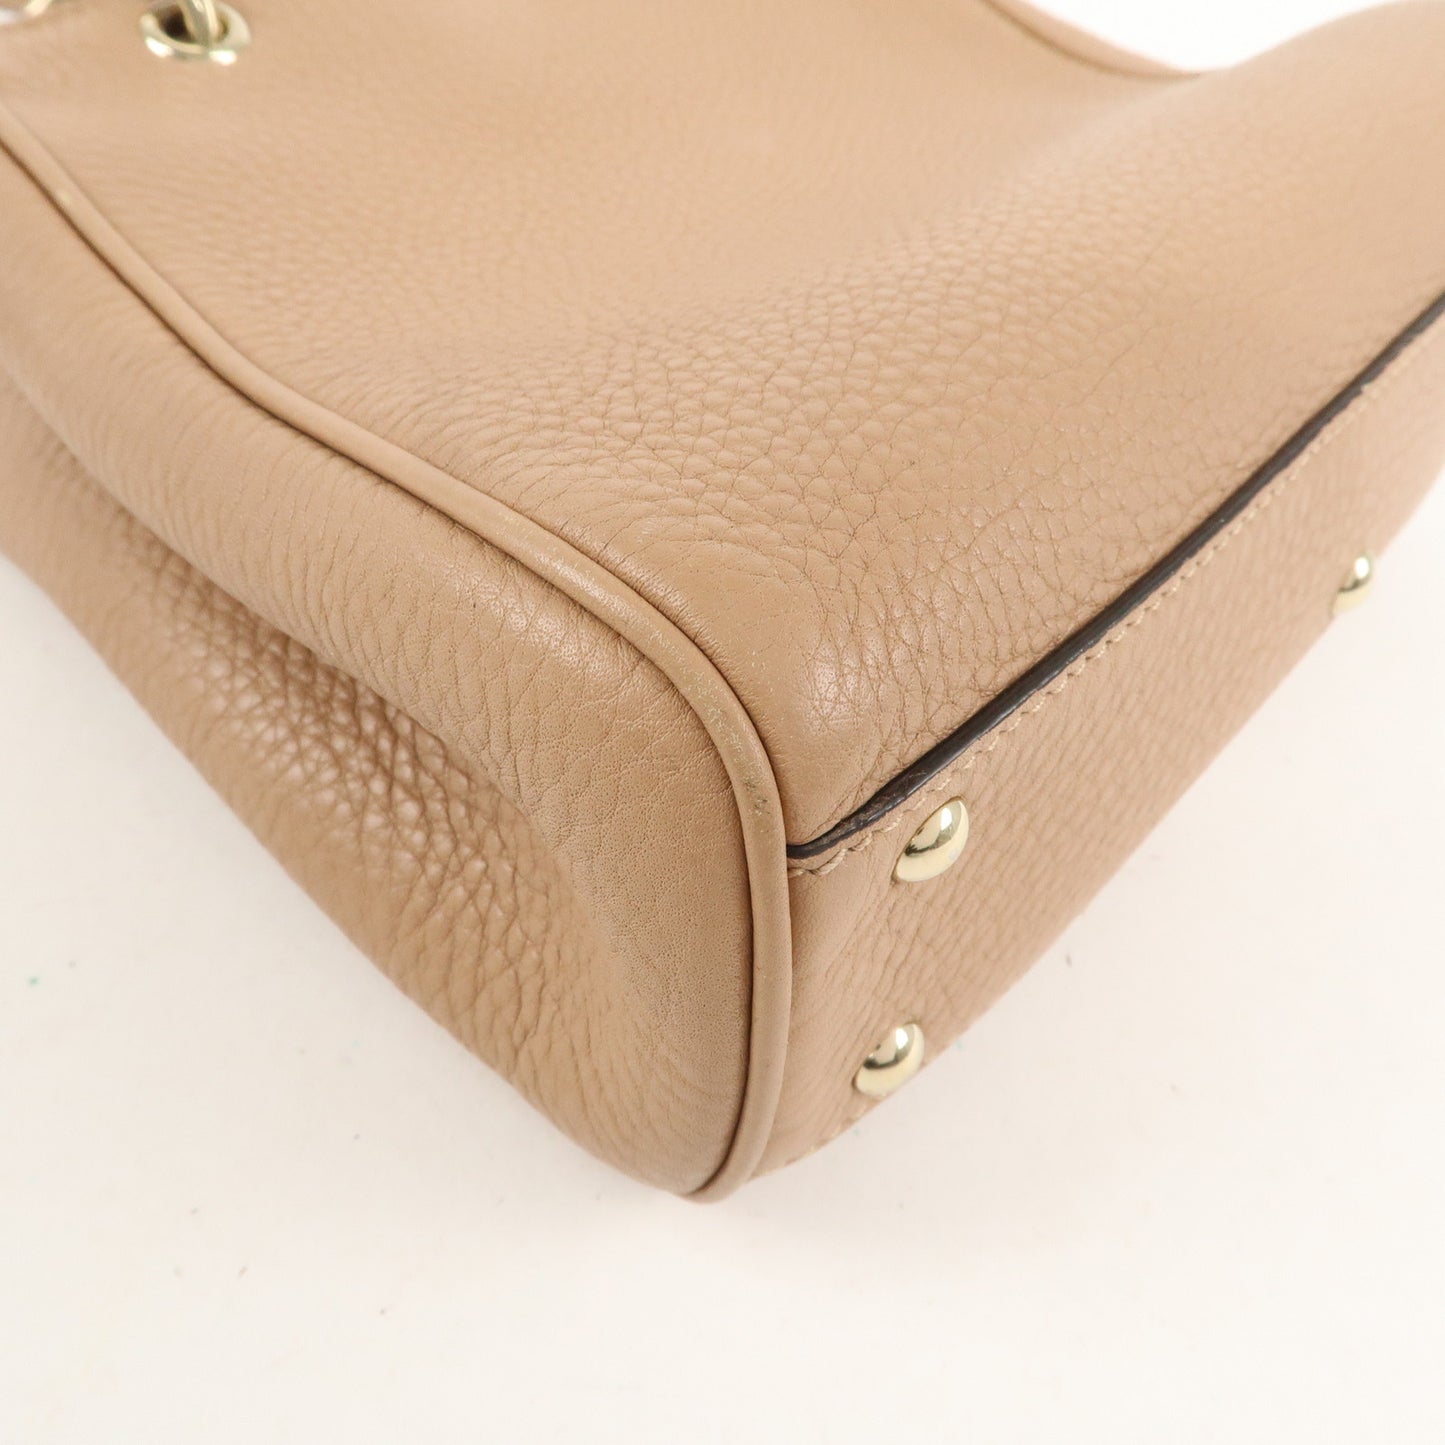 GUCCI Bamboo Leather 2WAY bag Shoulder Bag Pink Beige 368823